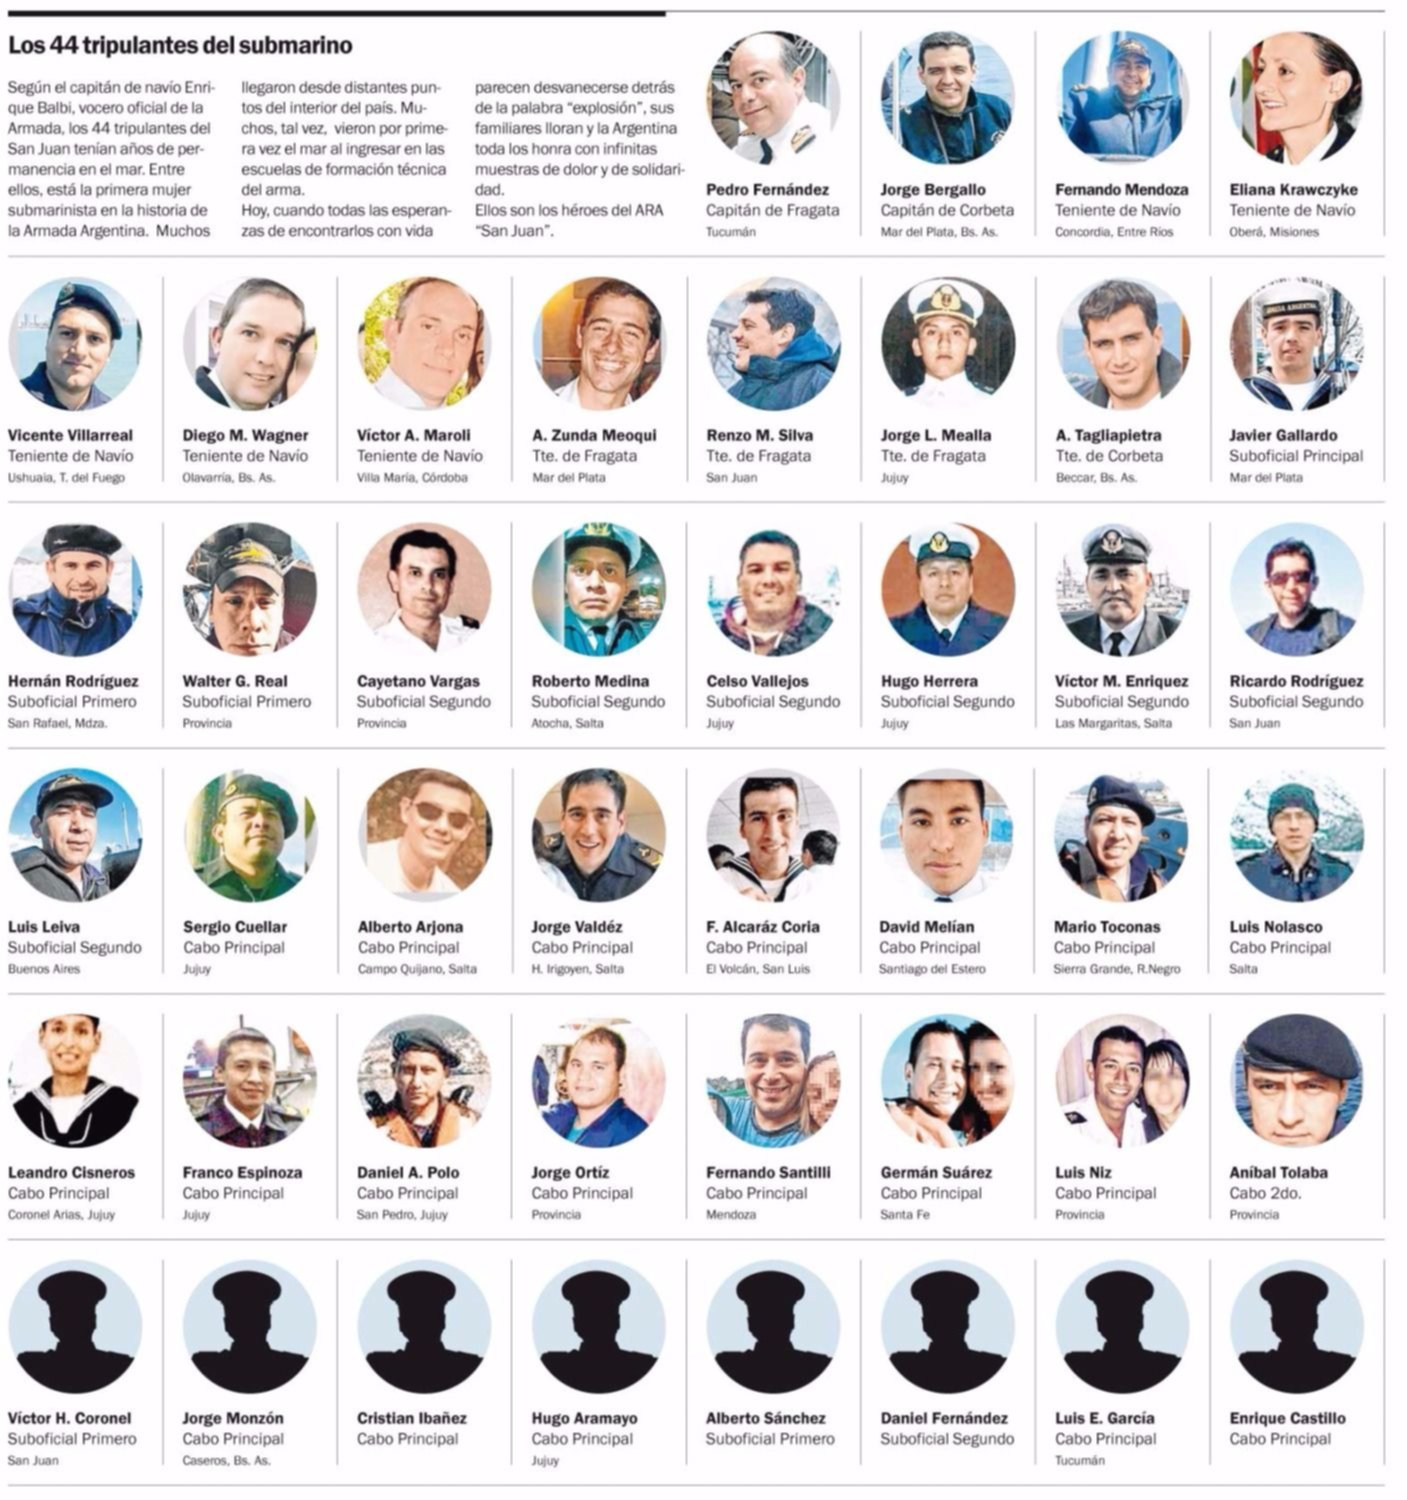 Los 44 tripulantes del submarino